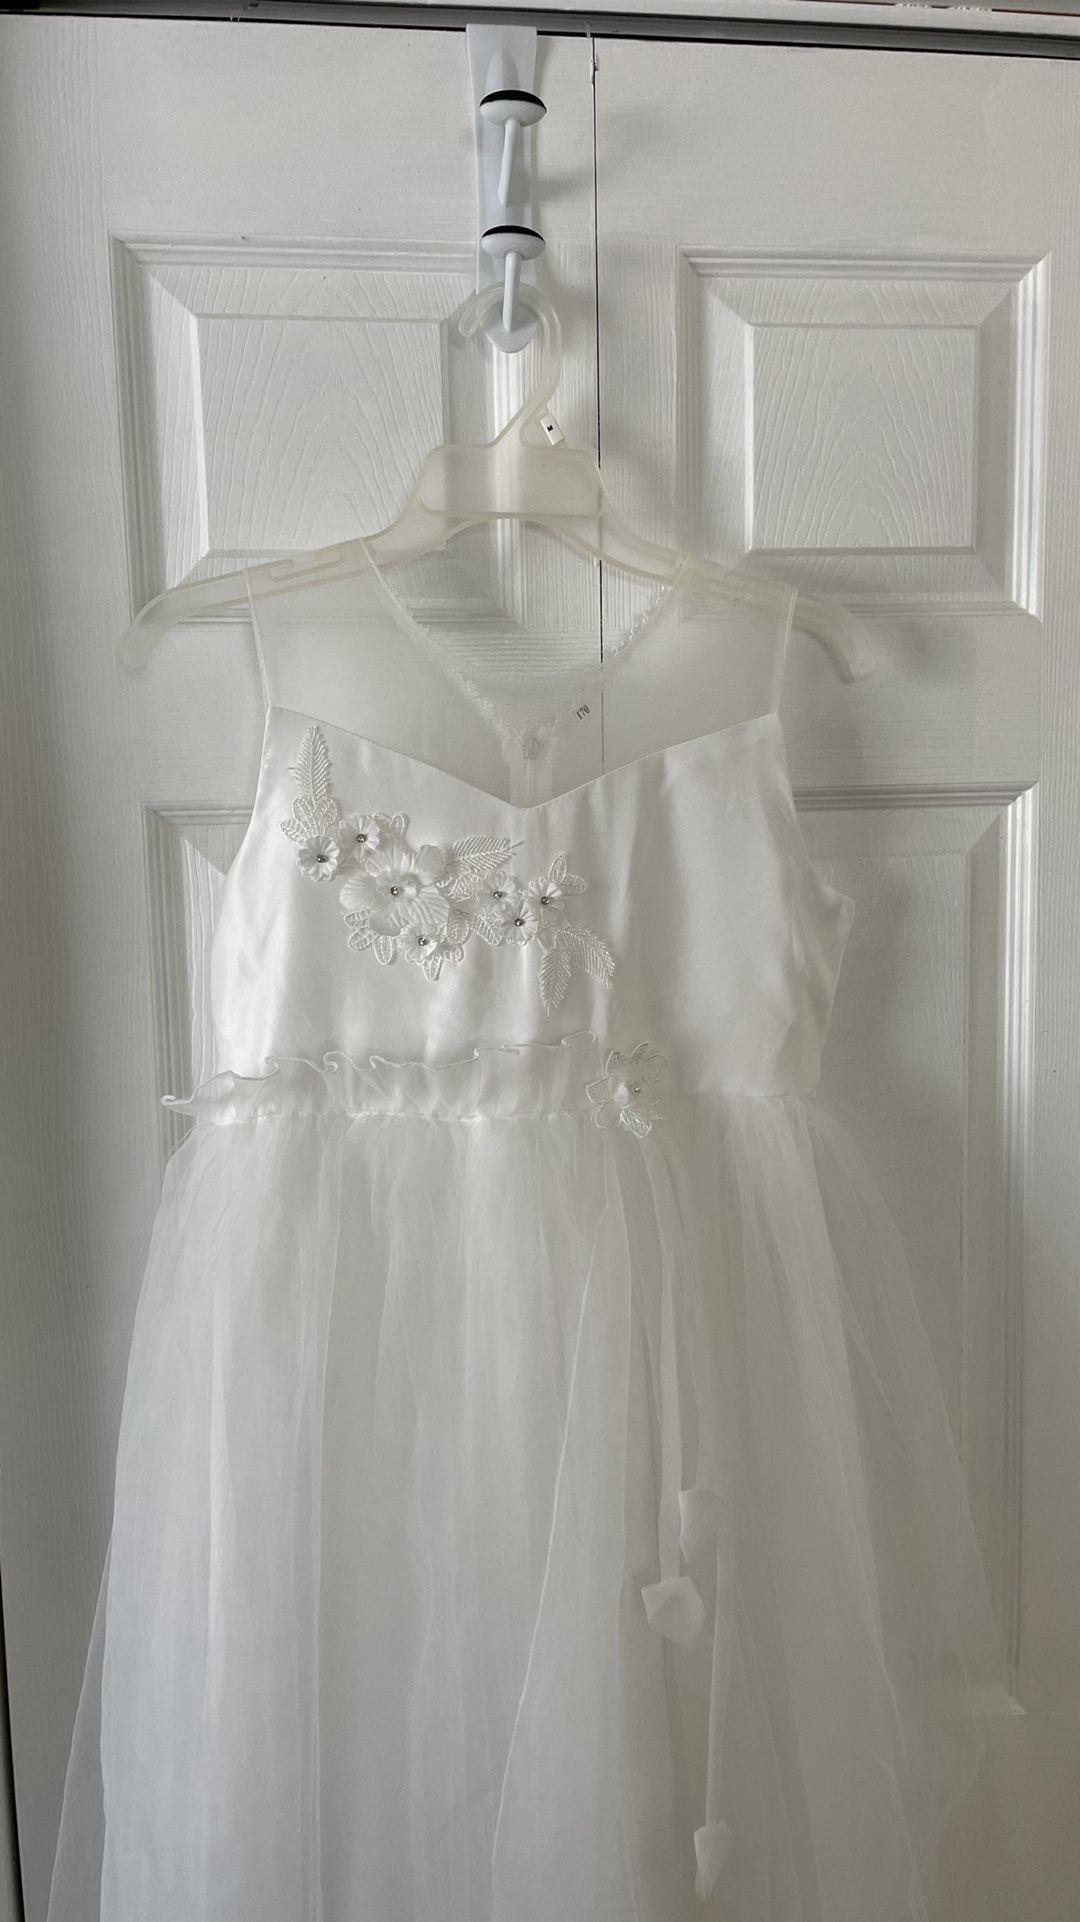 White Dress w/ Tule Skirt & Flowers